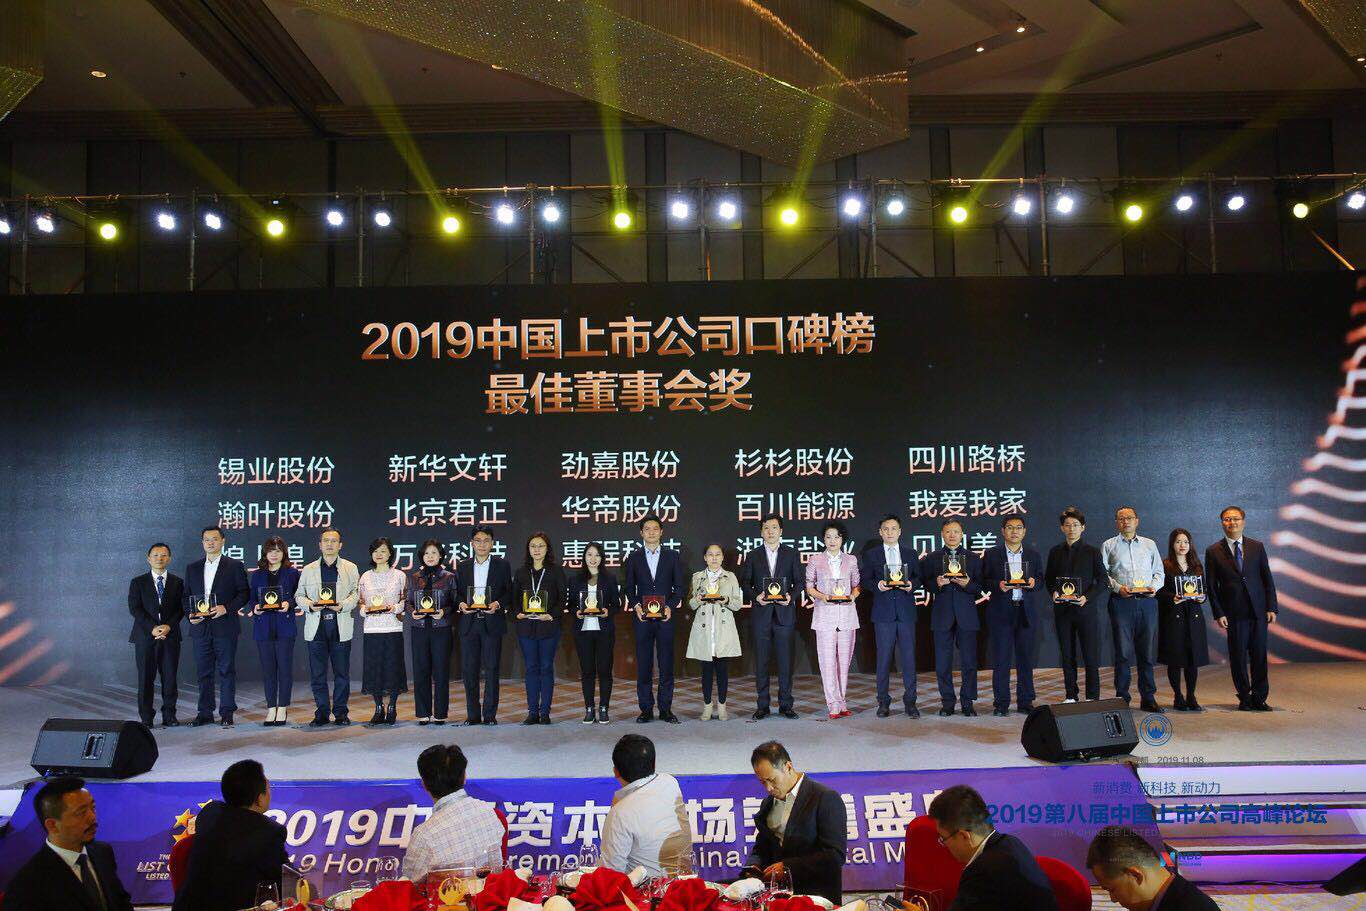 萬興科技榮獲2019年第八屆中國上市公司高峰論壇“最佳董事會”